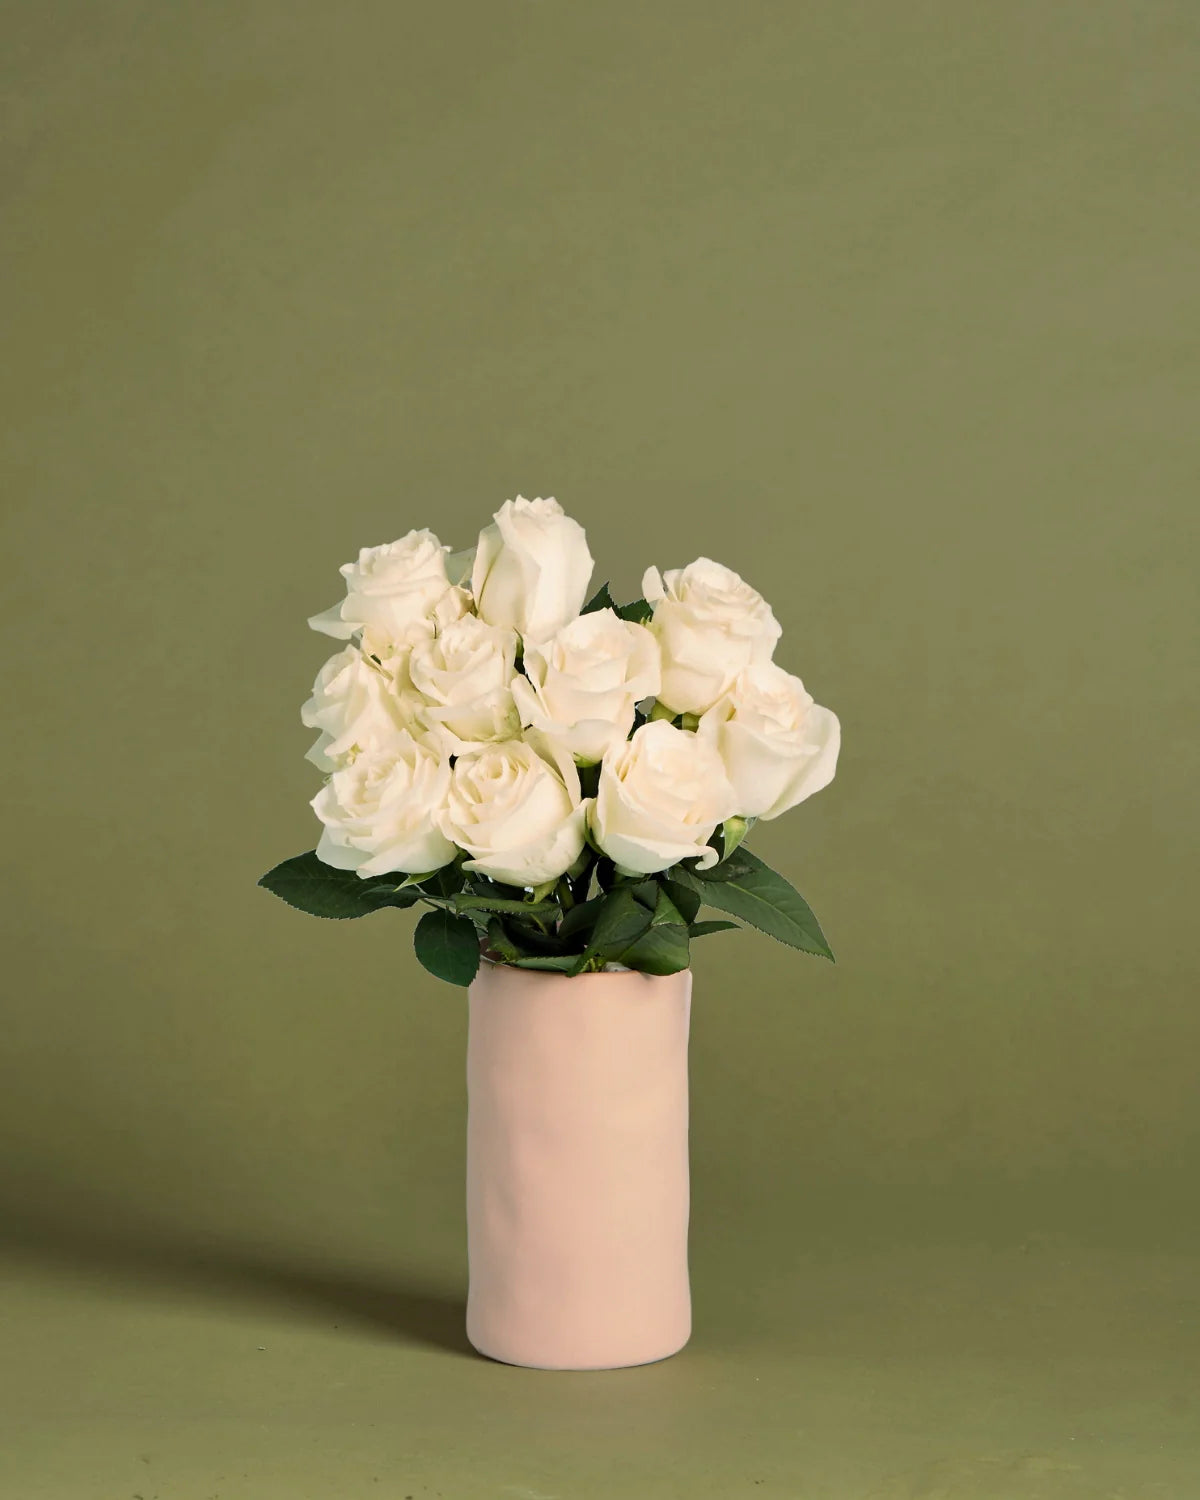 Sympathy White Roses + Vase